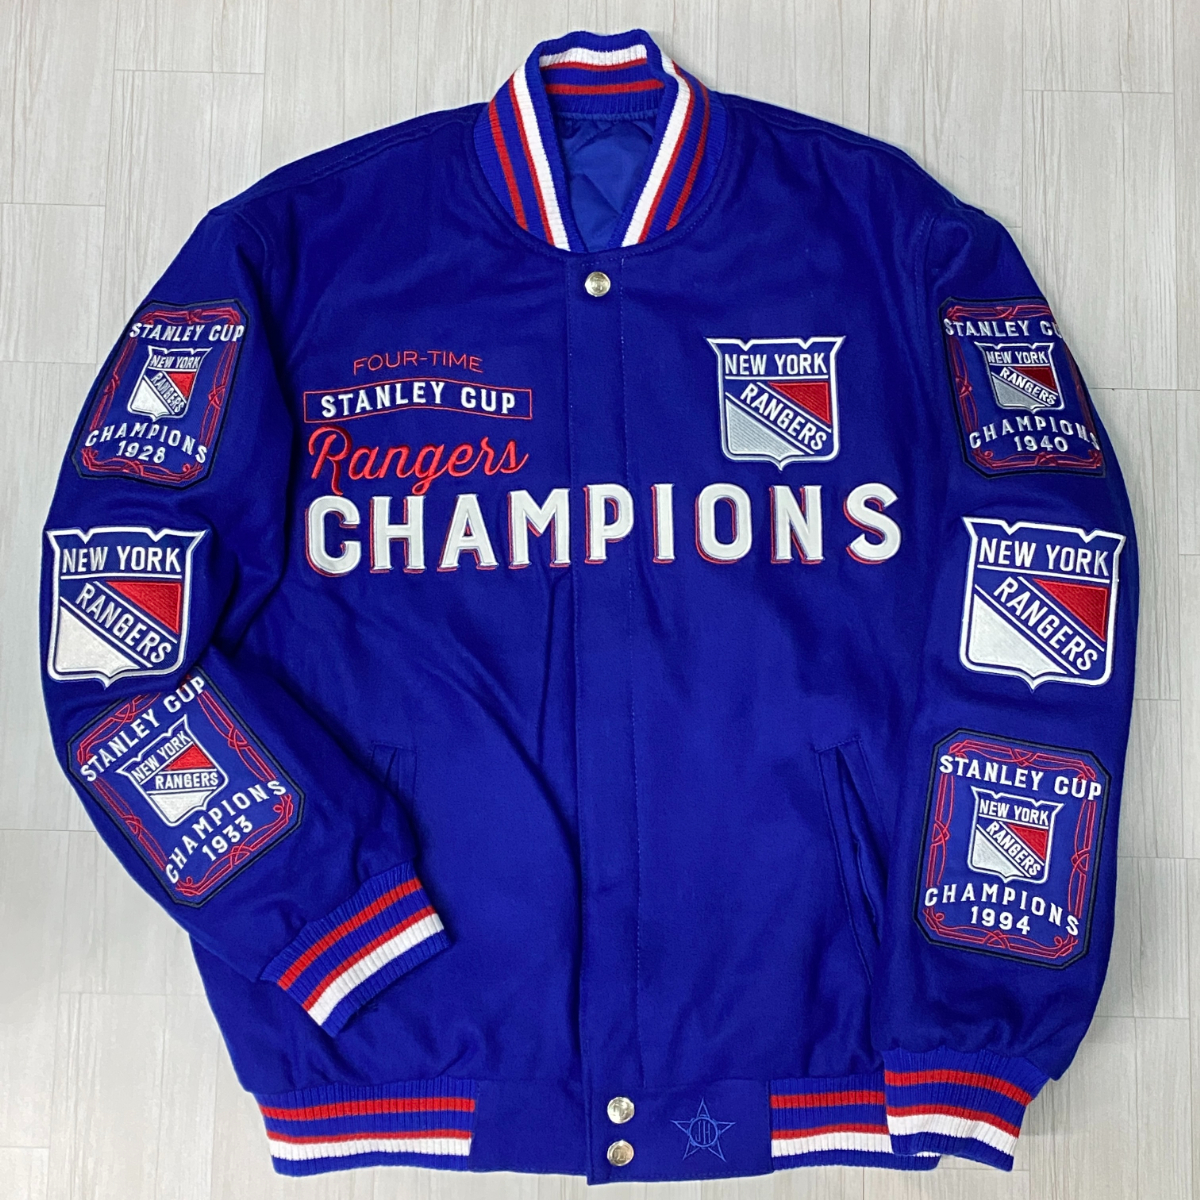 NHL公式 【L】 JHデザイン NY Rangers レンジャース 限定 スタンリー チャンピオンズ リバーシブル スタジャン USA正規品 アイスホッケー